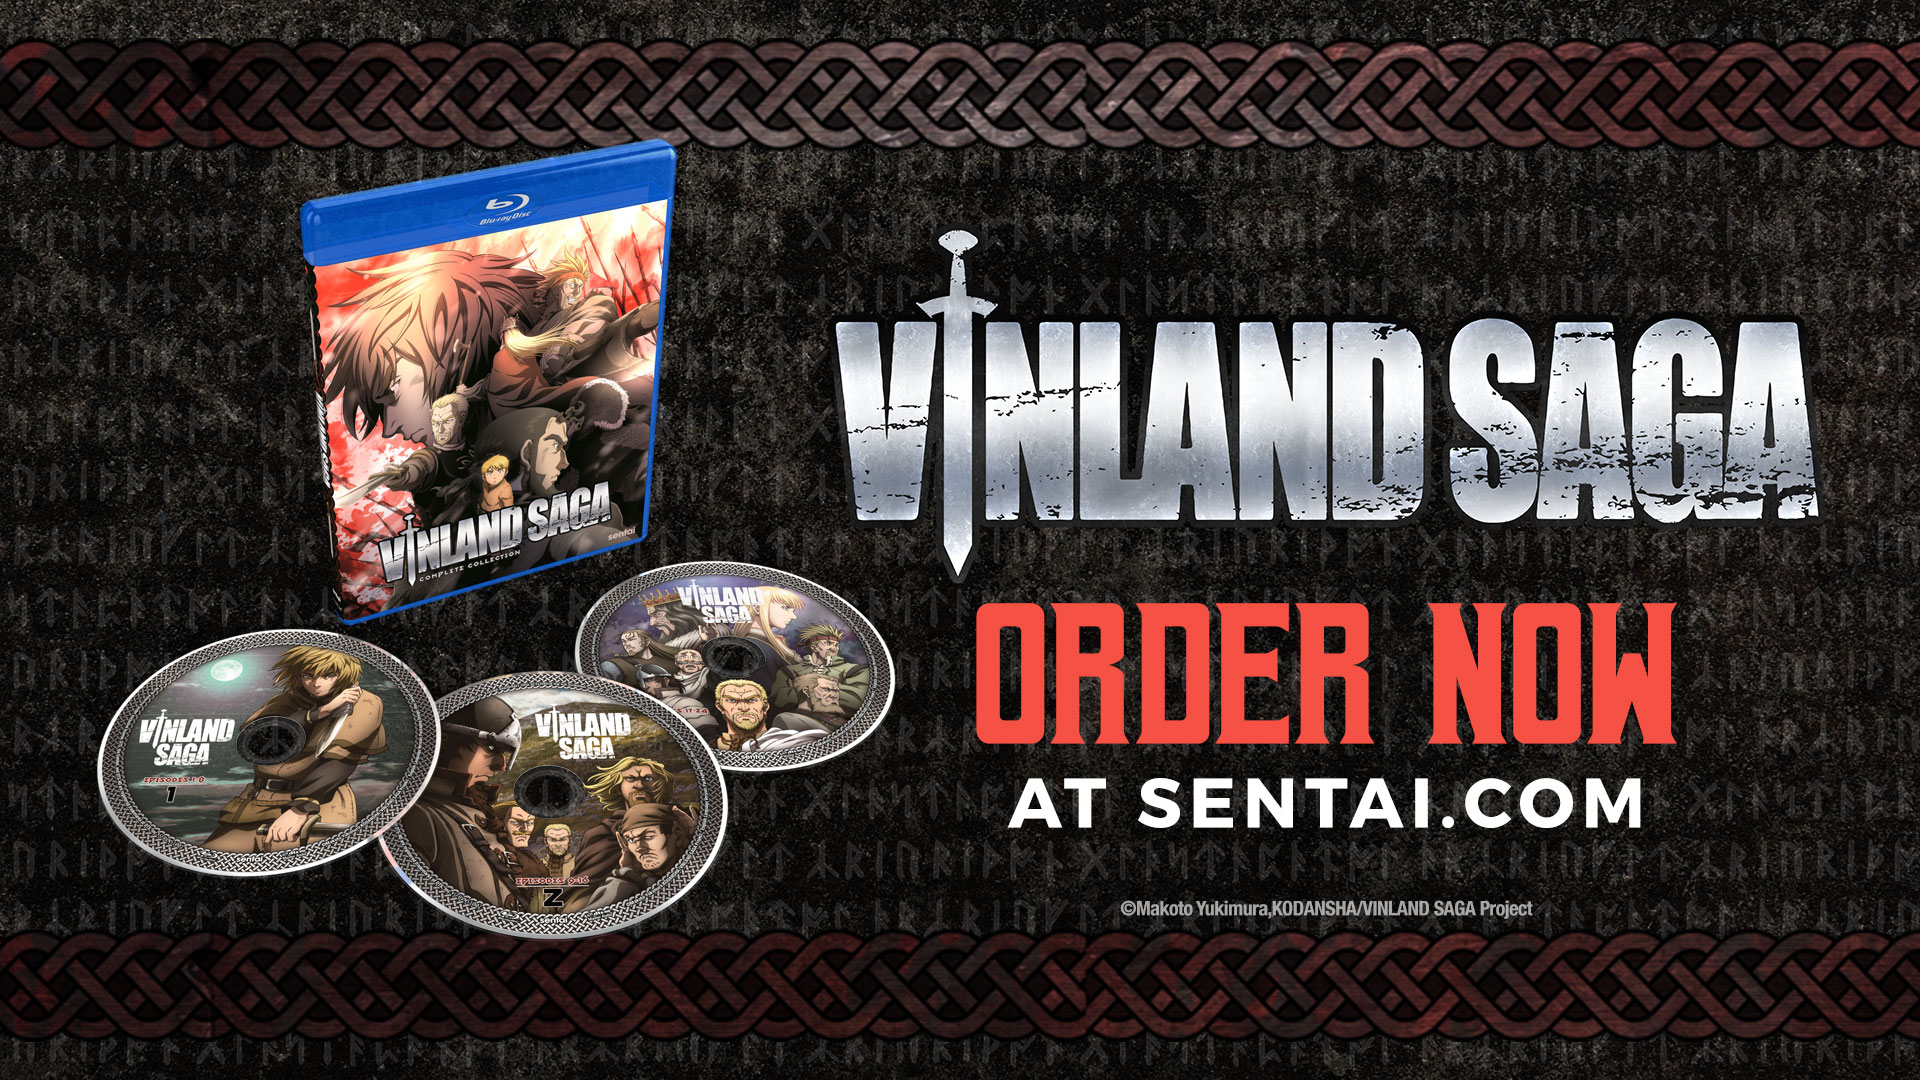 The logo and Blu-ray for Vinland Saga. The text says "Vinland Saga," and "Order now at sentai.com"